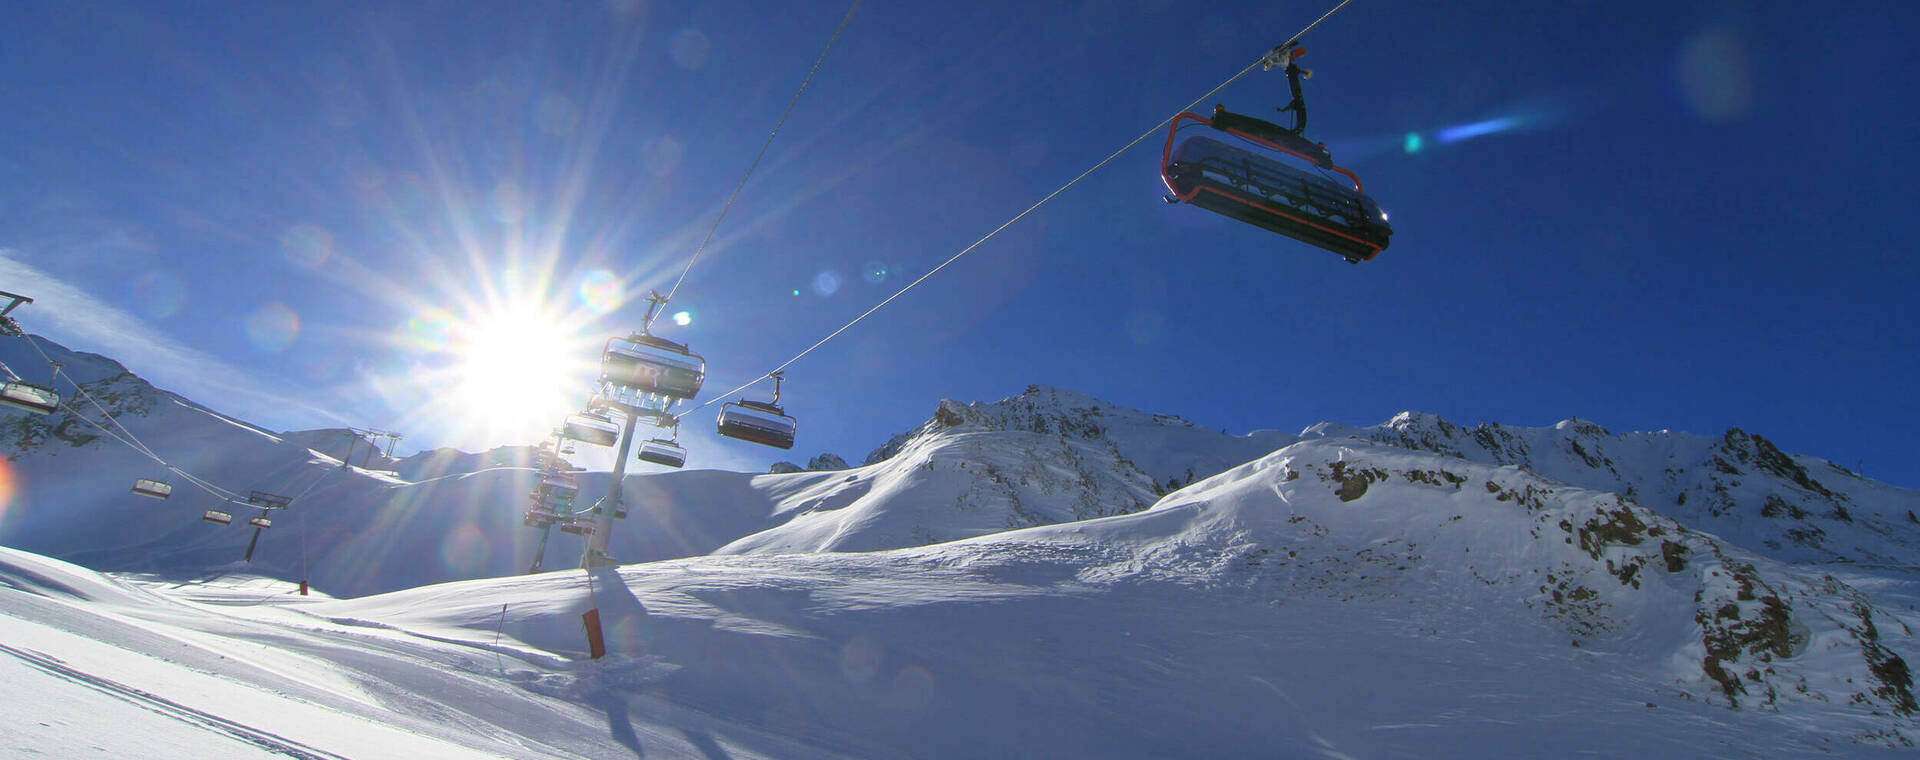  Silvretta Arena Ischgl eines der schönsten Skigebiete Europas